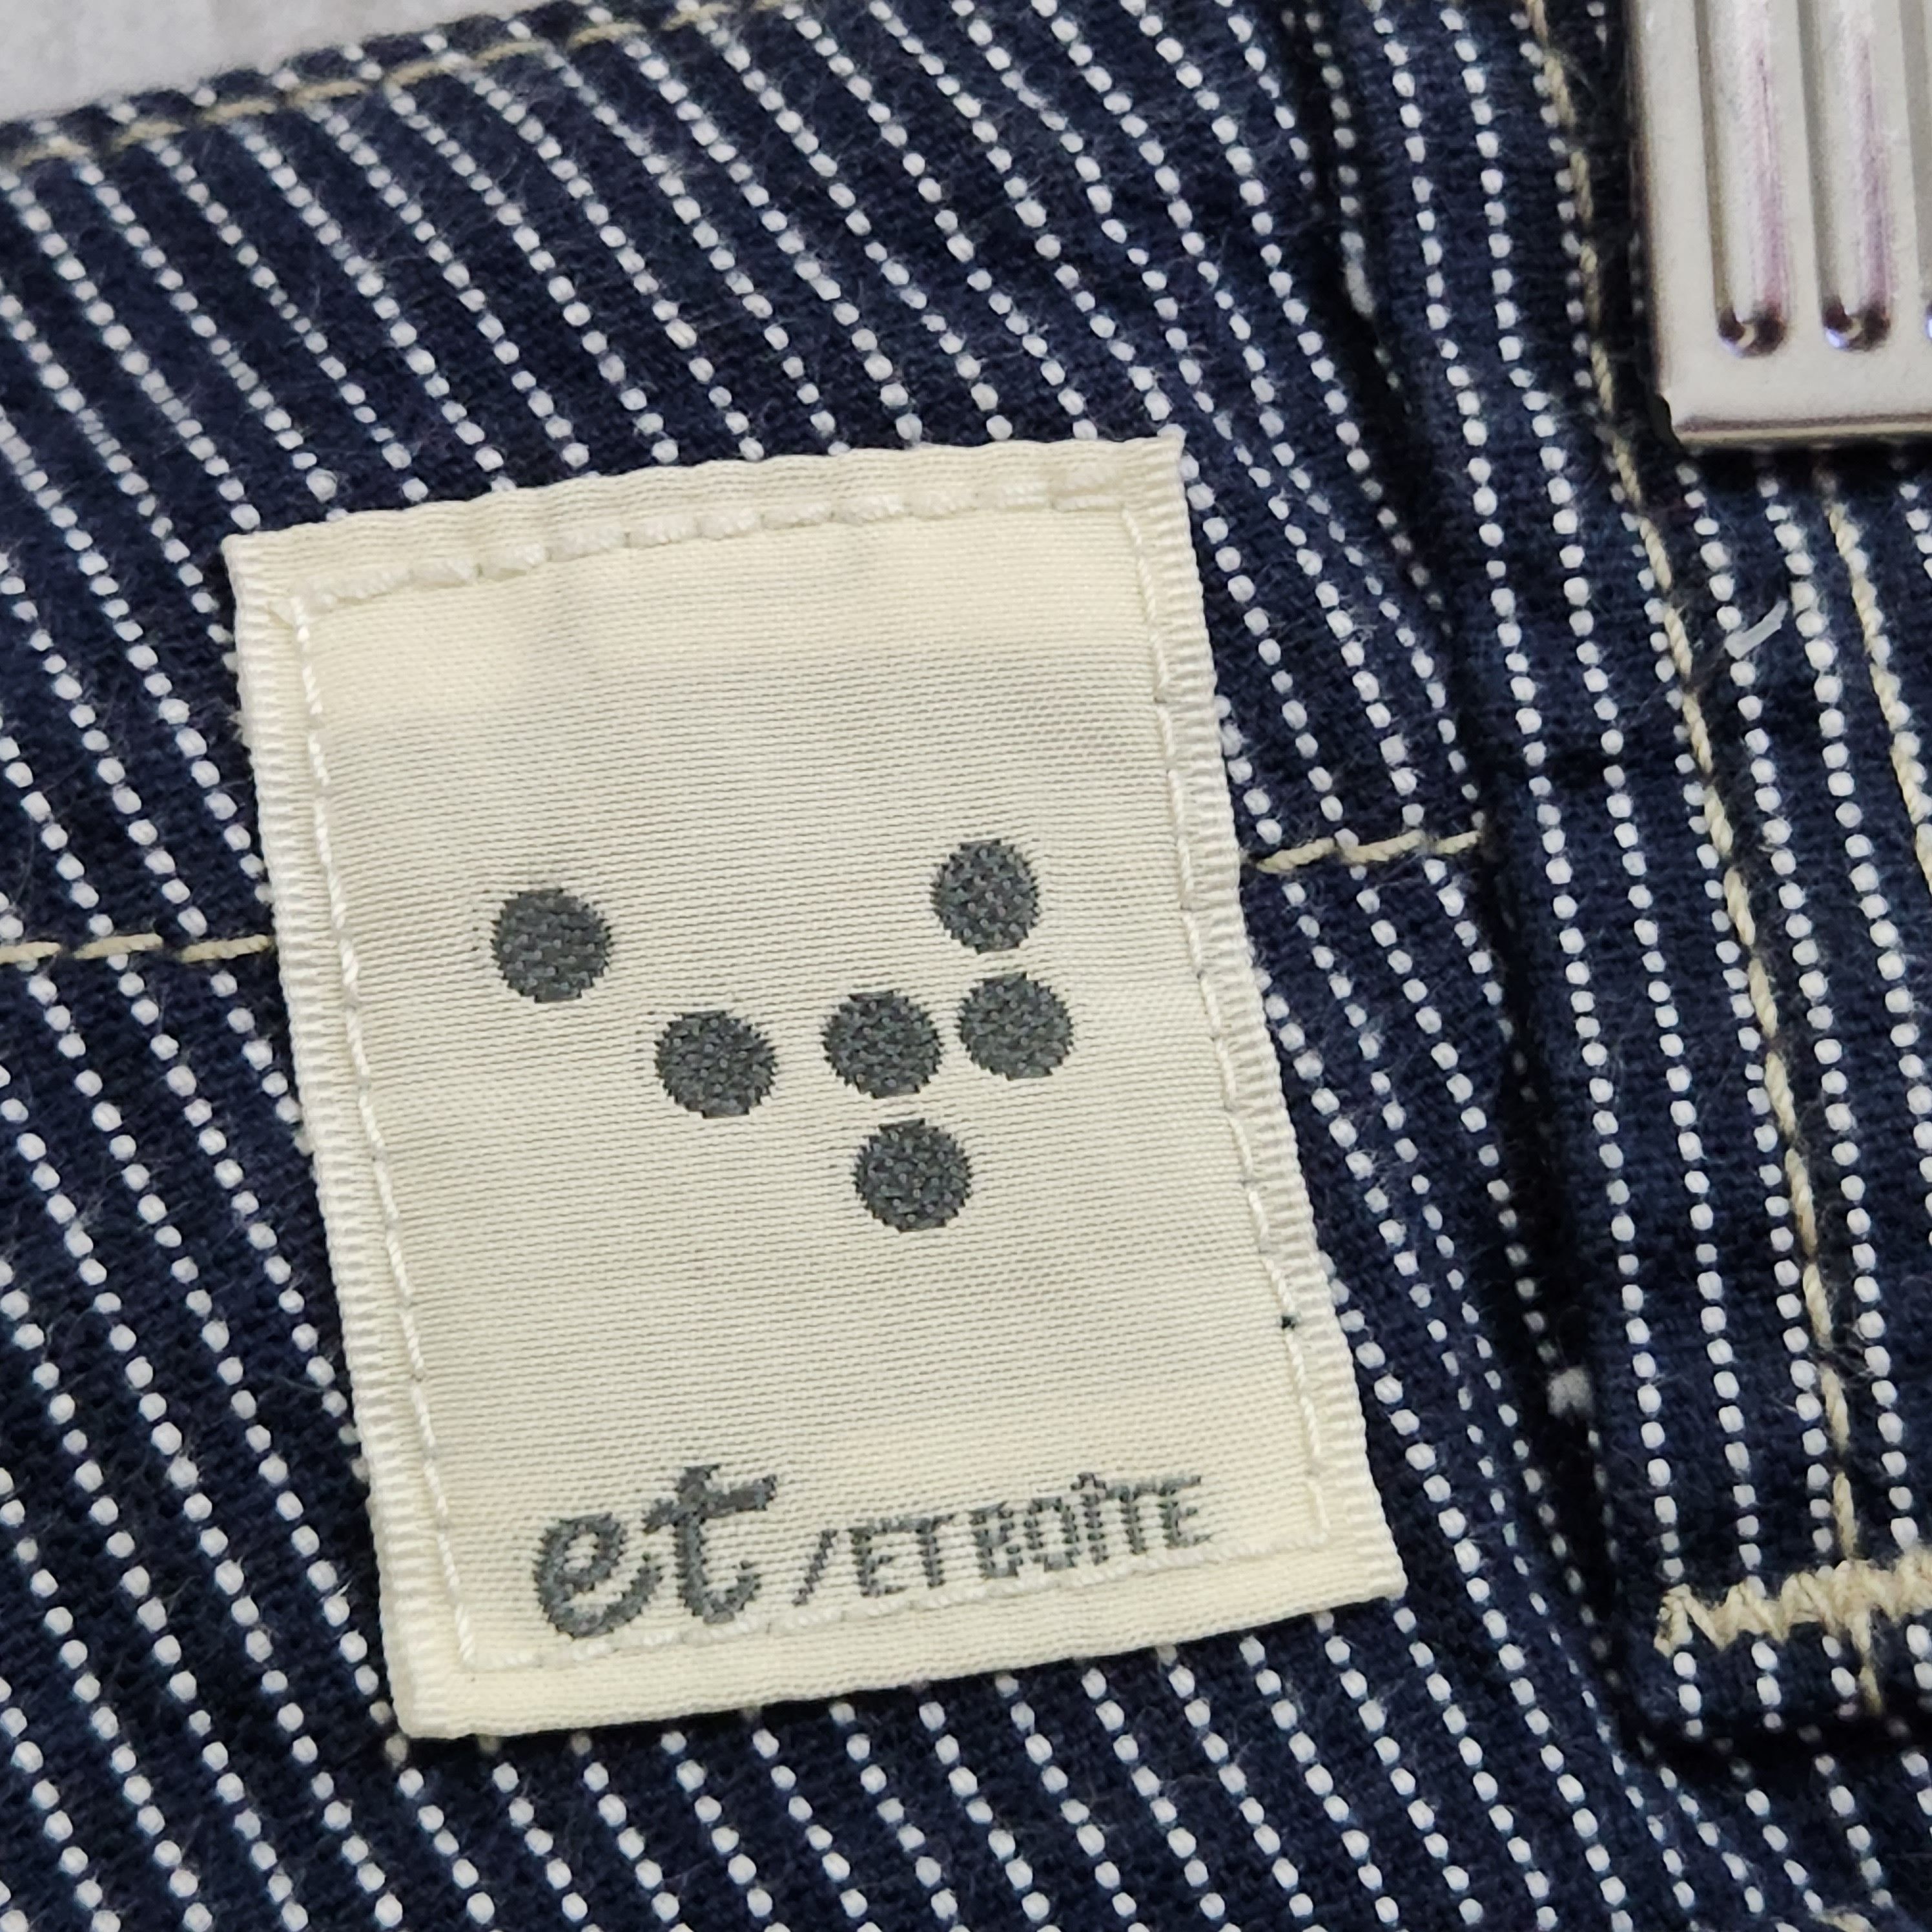 Japanese Brand - Flare ET Boite Flare Denim Jeans Japan - 8